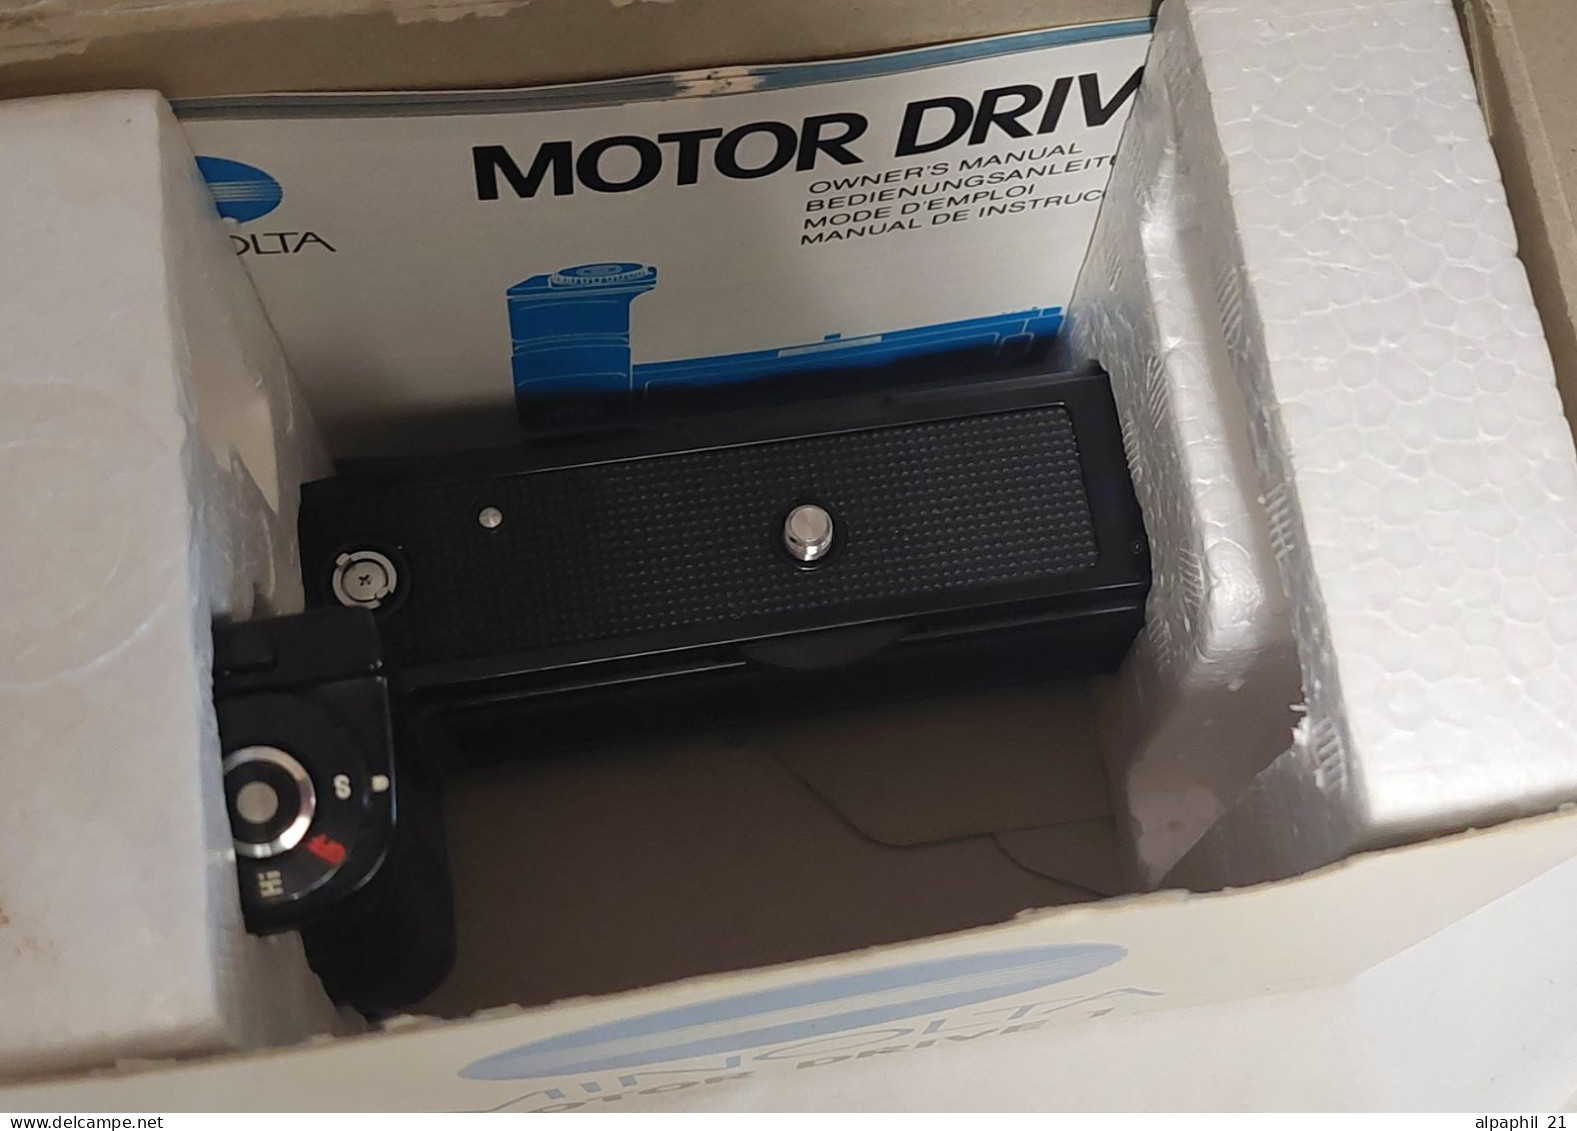 Minolta Motor Drive 1 - Materiaal & Toebehoren